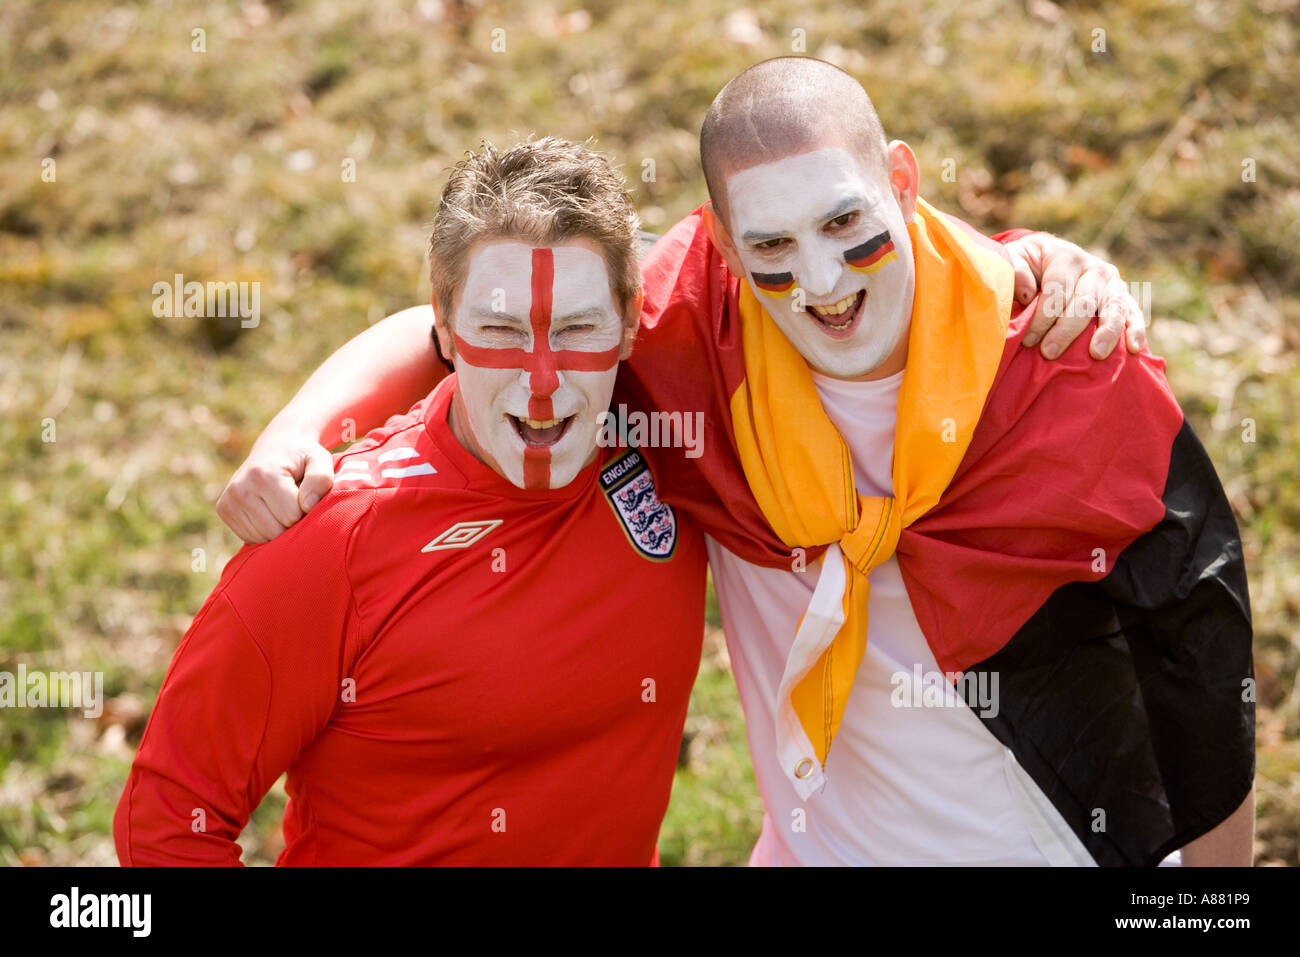 L'Angleterre et l'Allemagne de football fans enlacés dans un bon esprit, happy smiling faces peintes avec des couleurs nationales. Banque D'Images